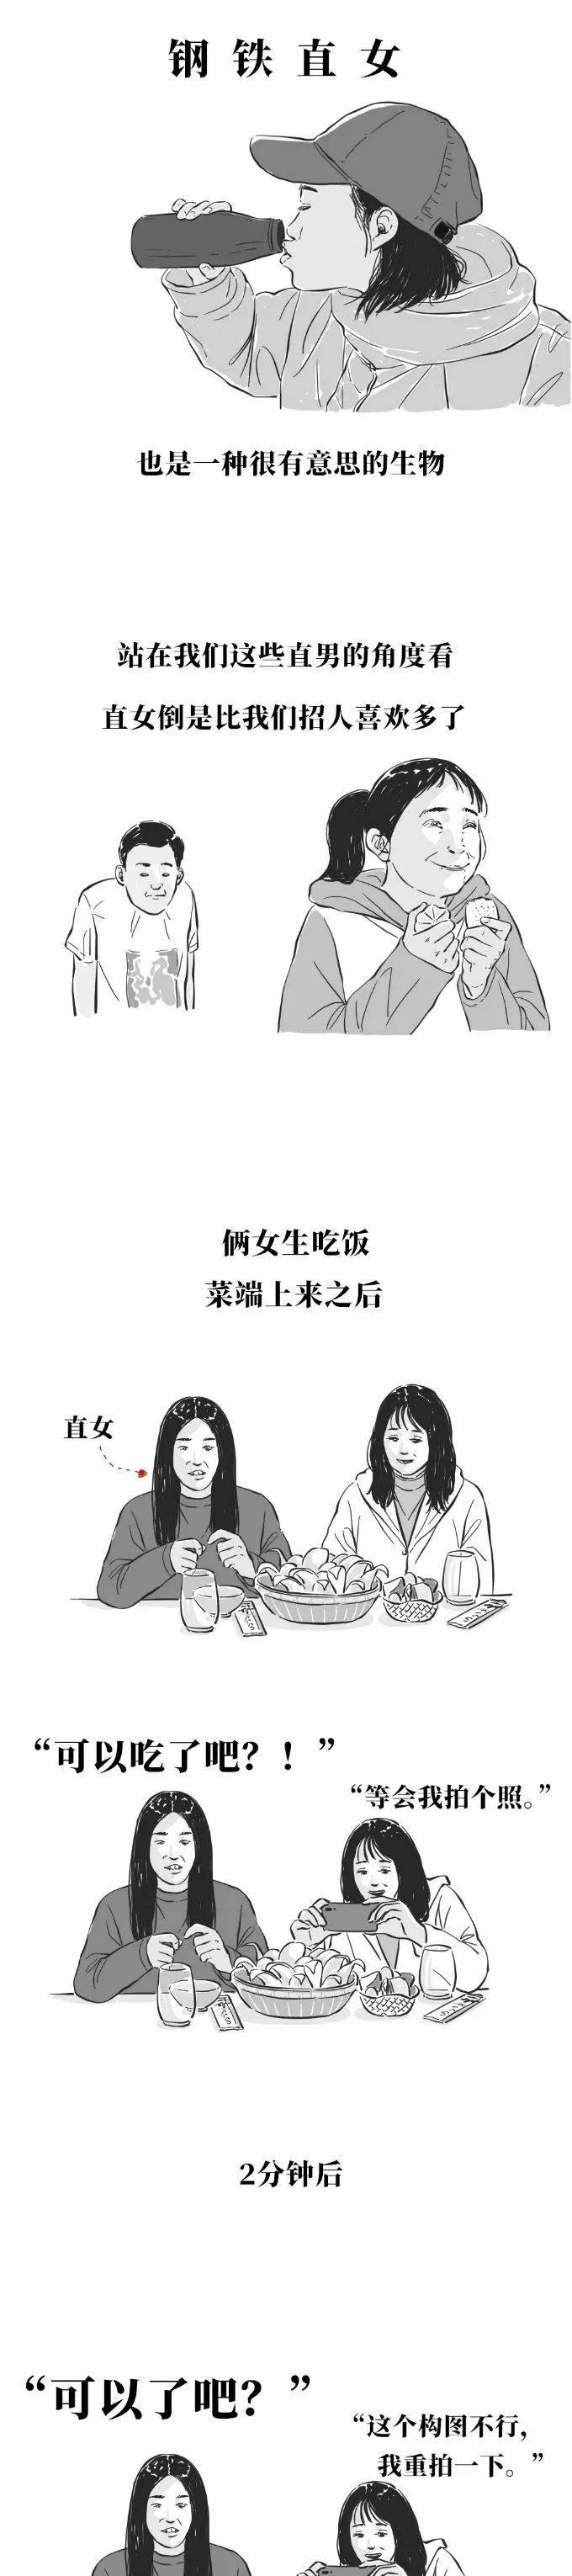 【短篇漫画】钢铁直女图鉴_yidao